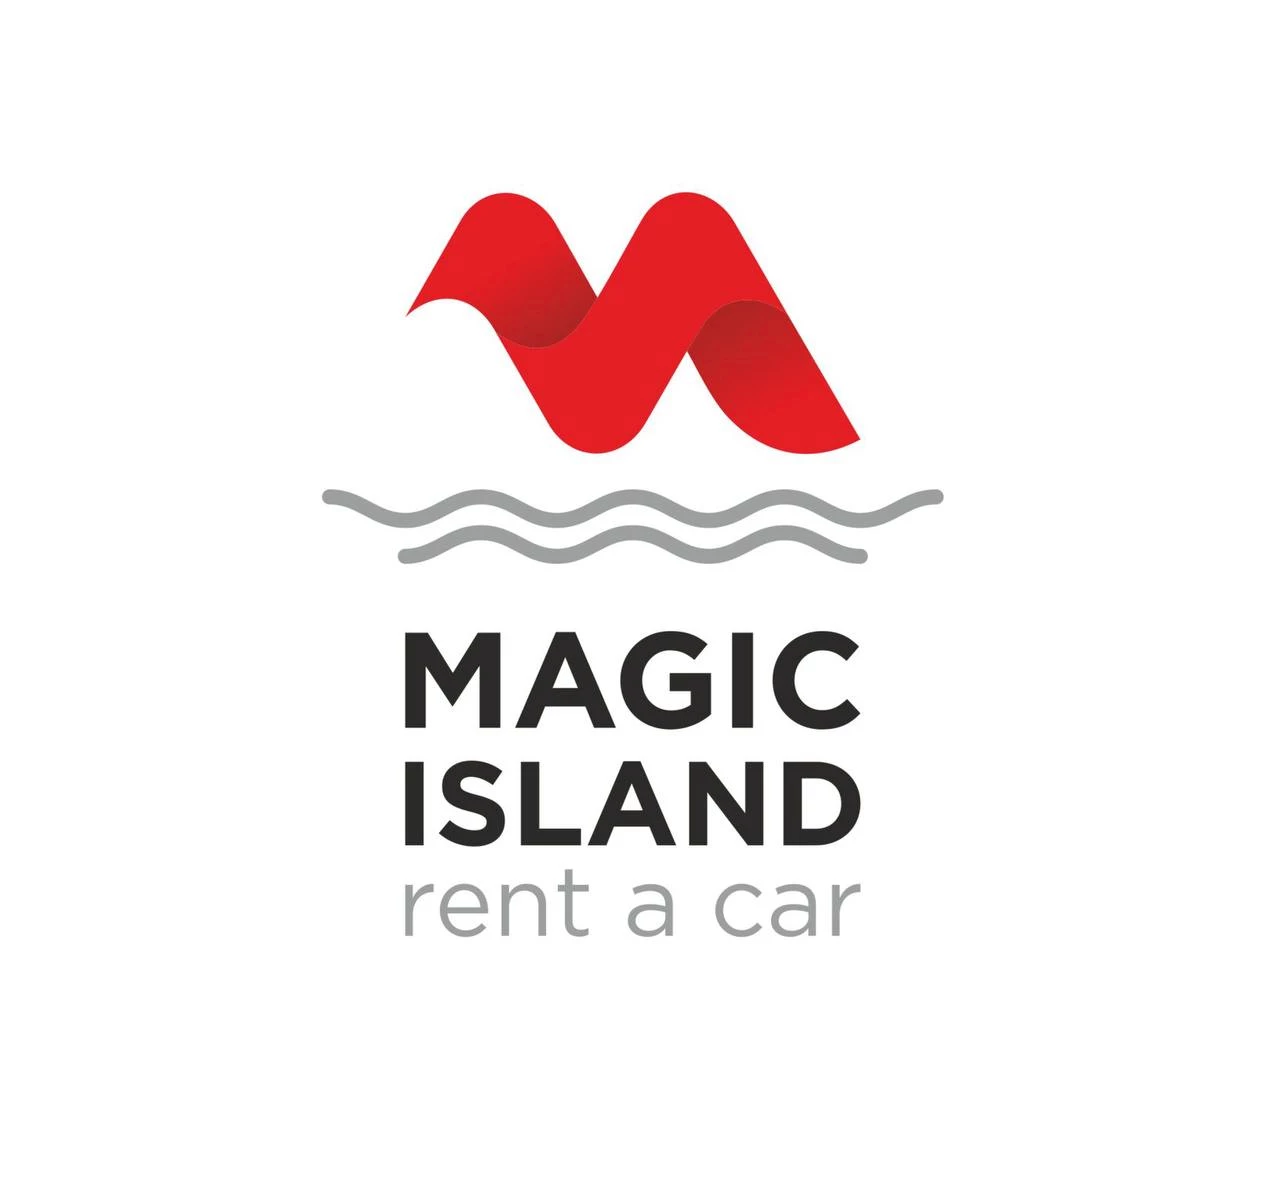 Magic Island rent a car